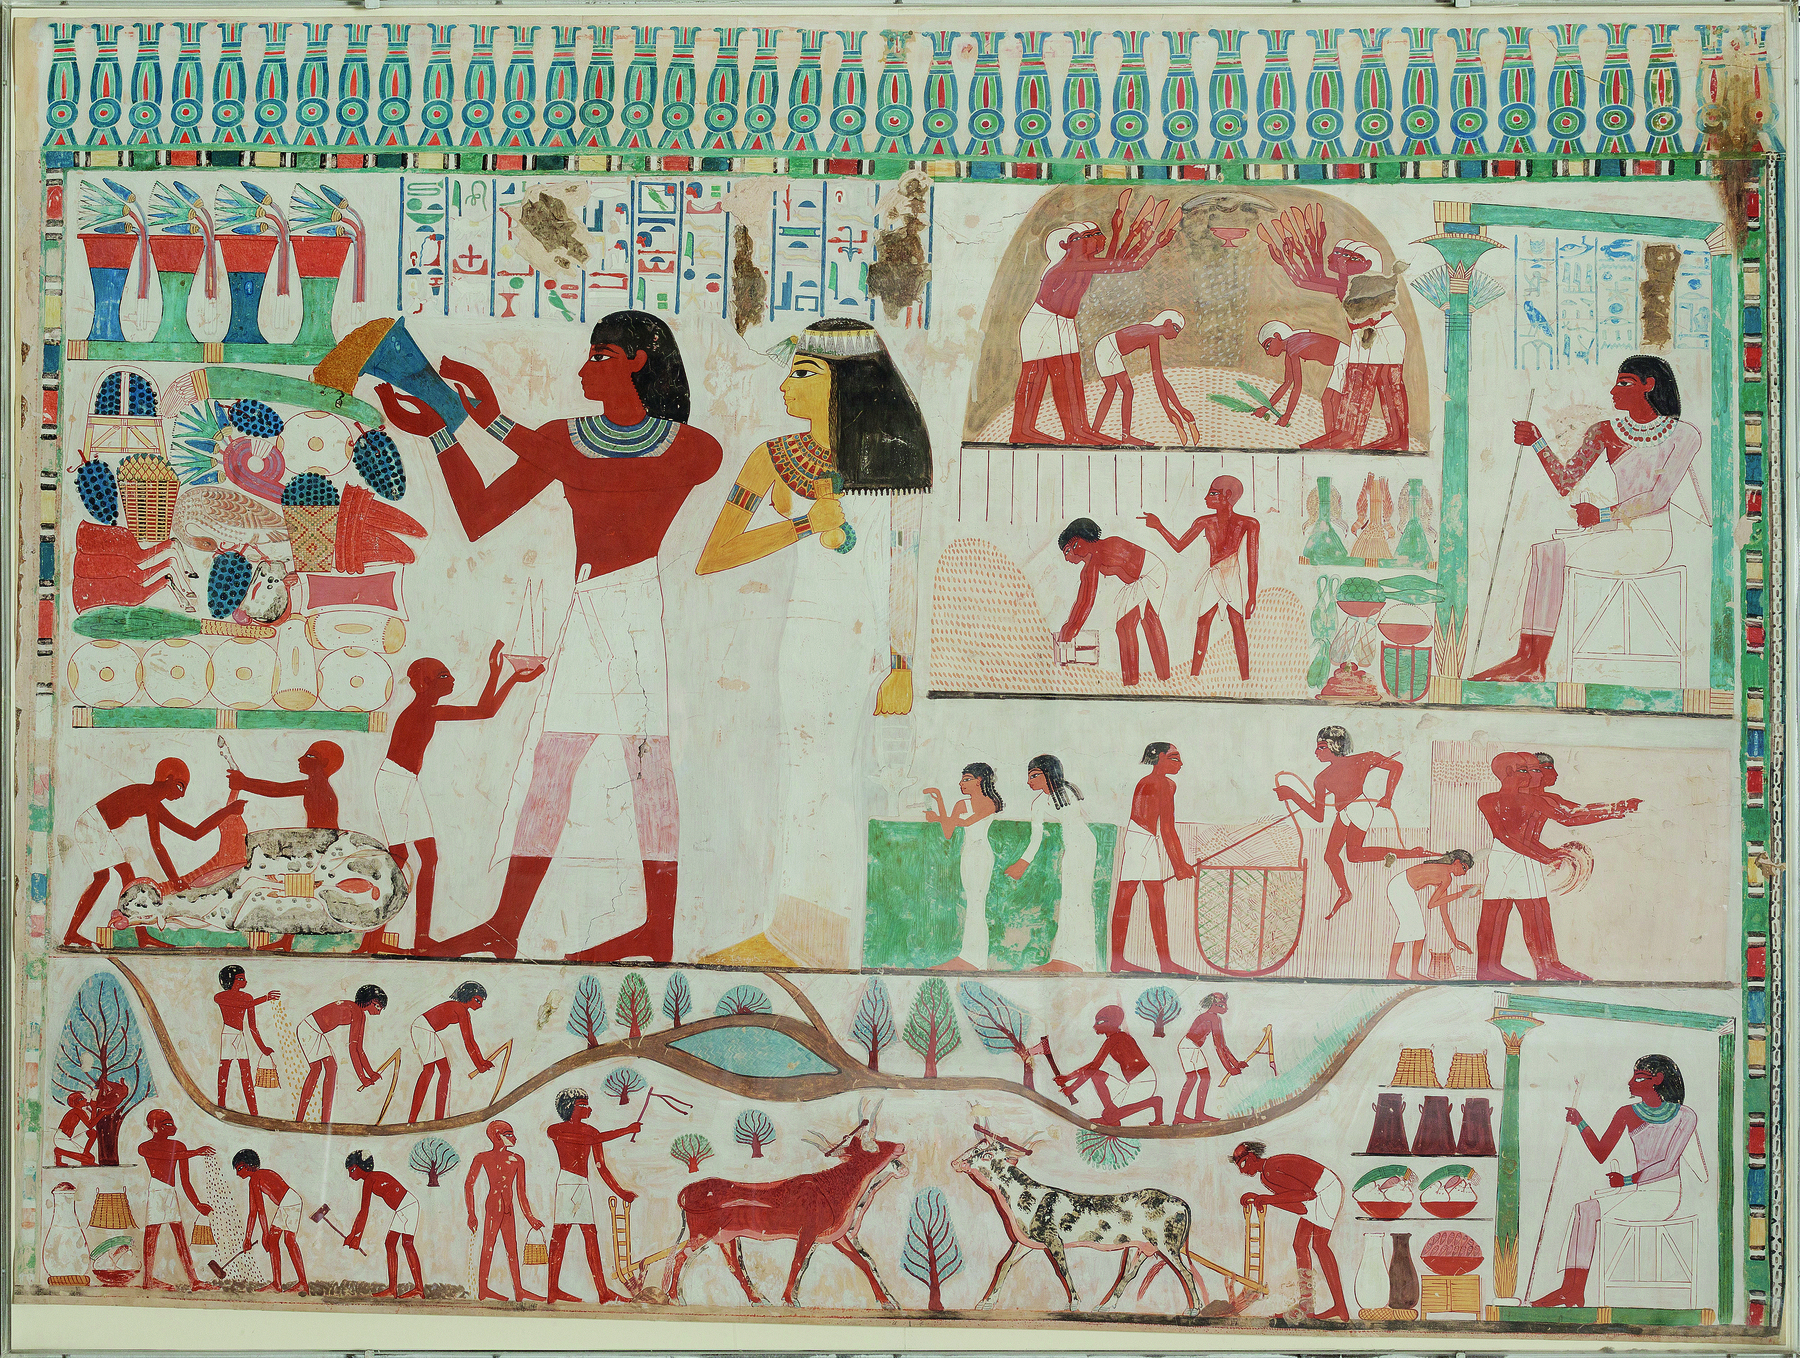 Pintura. Egípcios em diferentes atividades, como plantação, manuseio e utilização do arado, inclusive com tração animal, semeadura, colheita e armazenagem de alimentos.